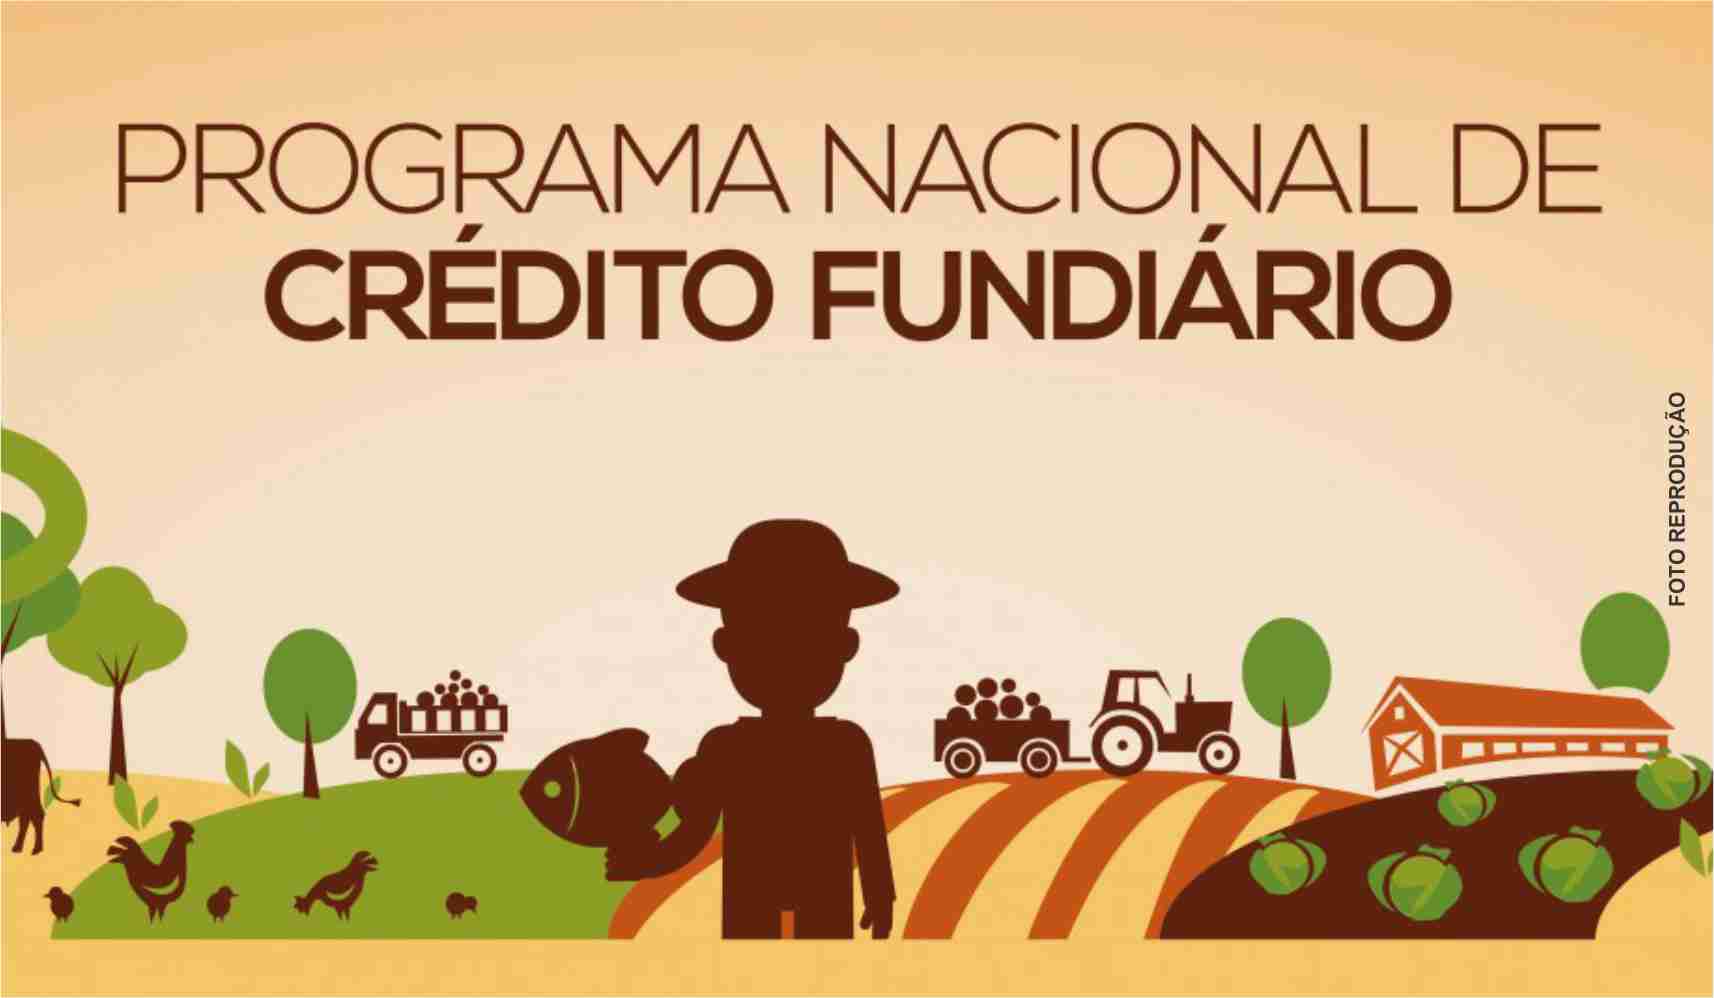 Agricultores acessam recursos para investir em imóveis rurais do Crédito Fundiário